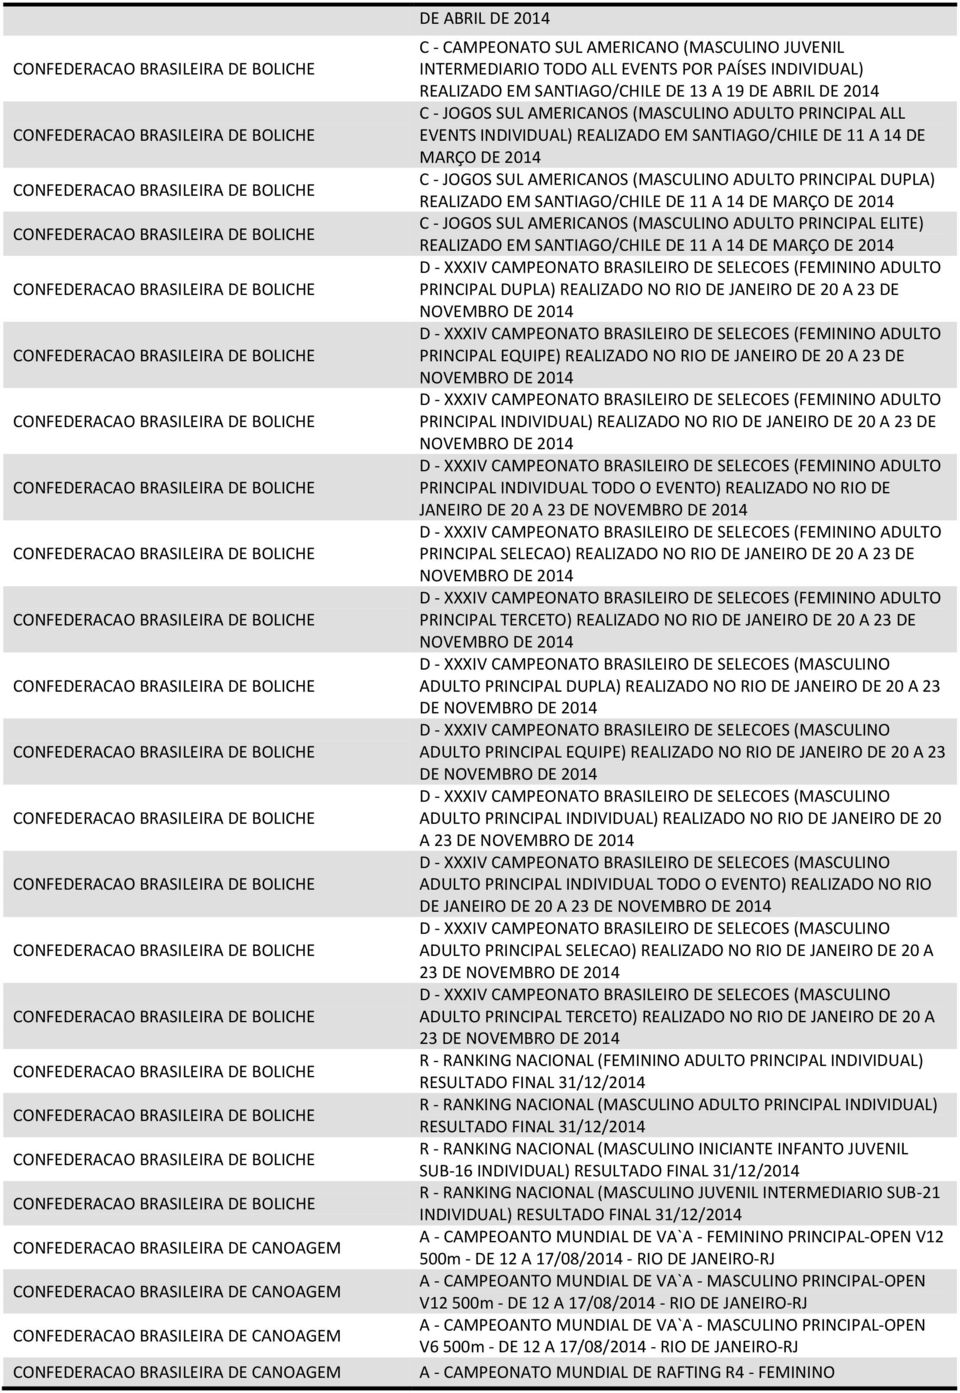 INDIVIDUAL) REALIZADO EM SANTIAGO/CHILE DE 11 A 14 DE MARÇO DE 2014 C - JOGOS SUL AMERICANOS (MASCULINO ADULTO PRINCIPAL DUPLA) REALIZADO EM SANTIAGO/CHILE DE 11 A 14 DE MARÇO DE 2014 C - JOGOS SUL